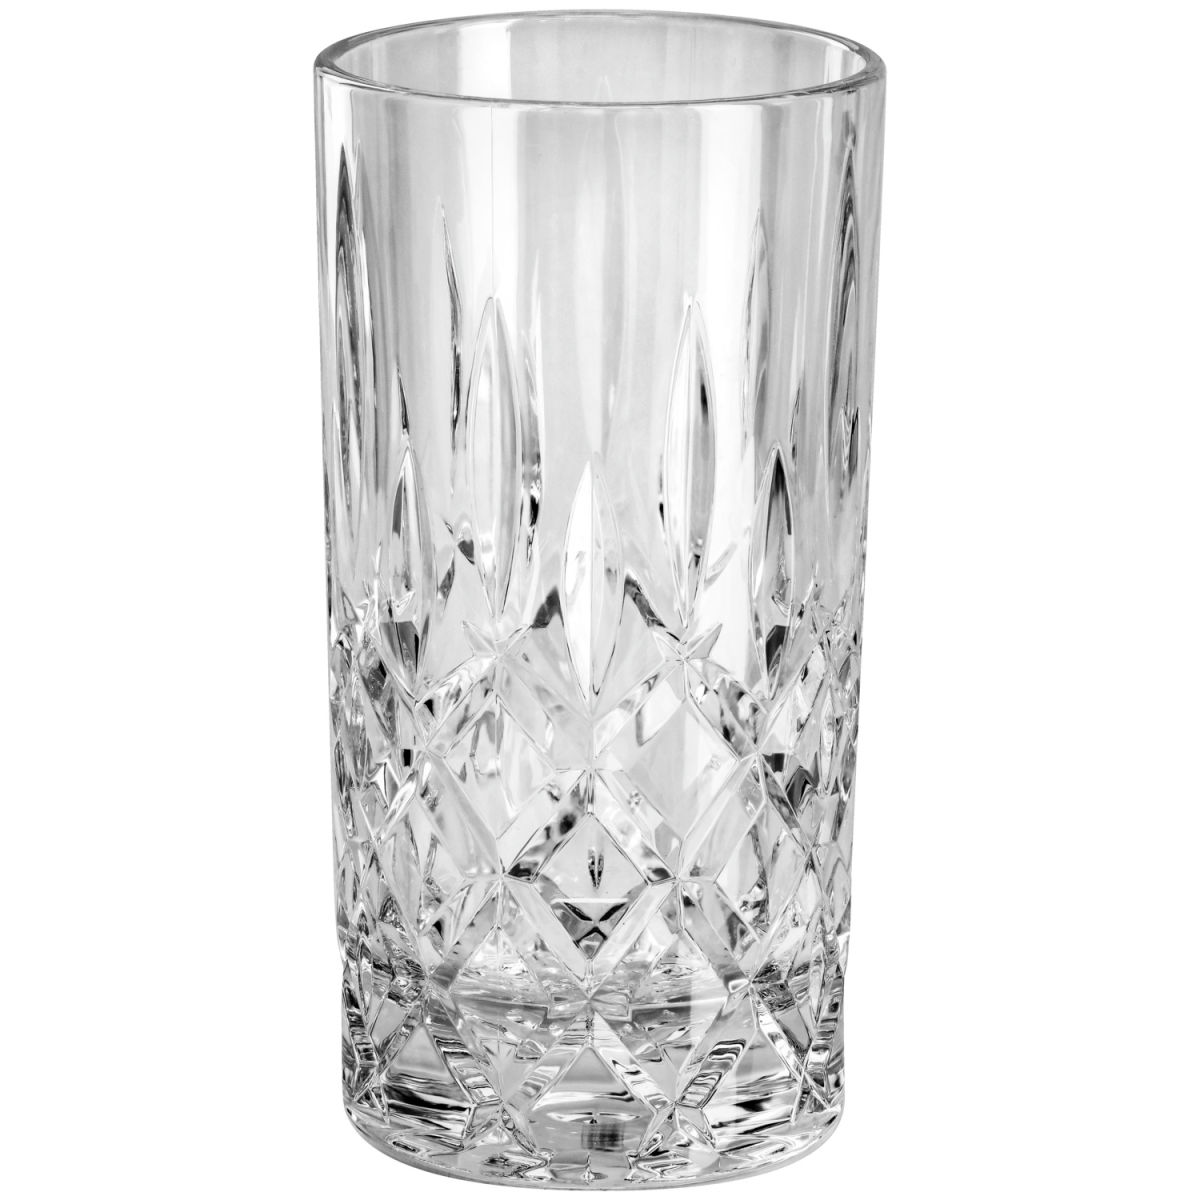 Vega Longdrinkglas Jenina Polycarbonat; 410ml, 7.6x14.9 cm (ØxH); transparant; 6 stuk / verpakking